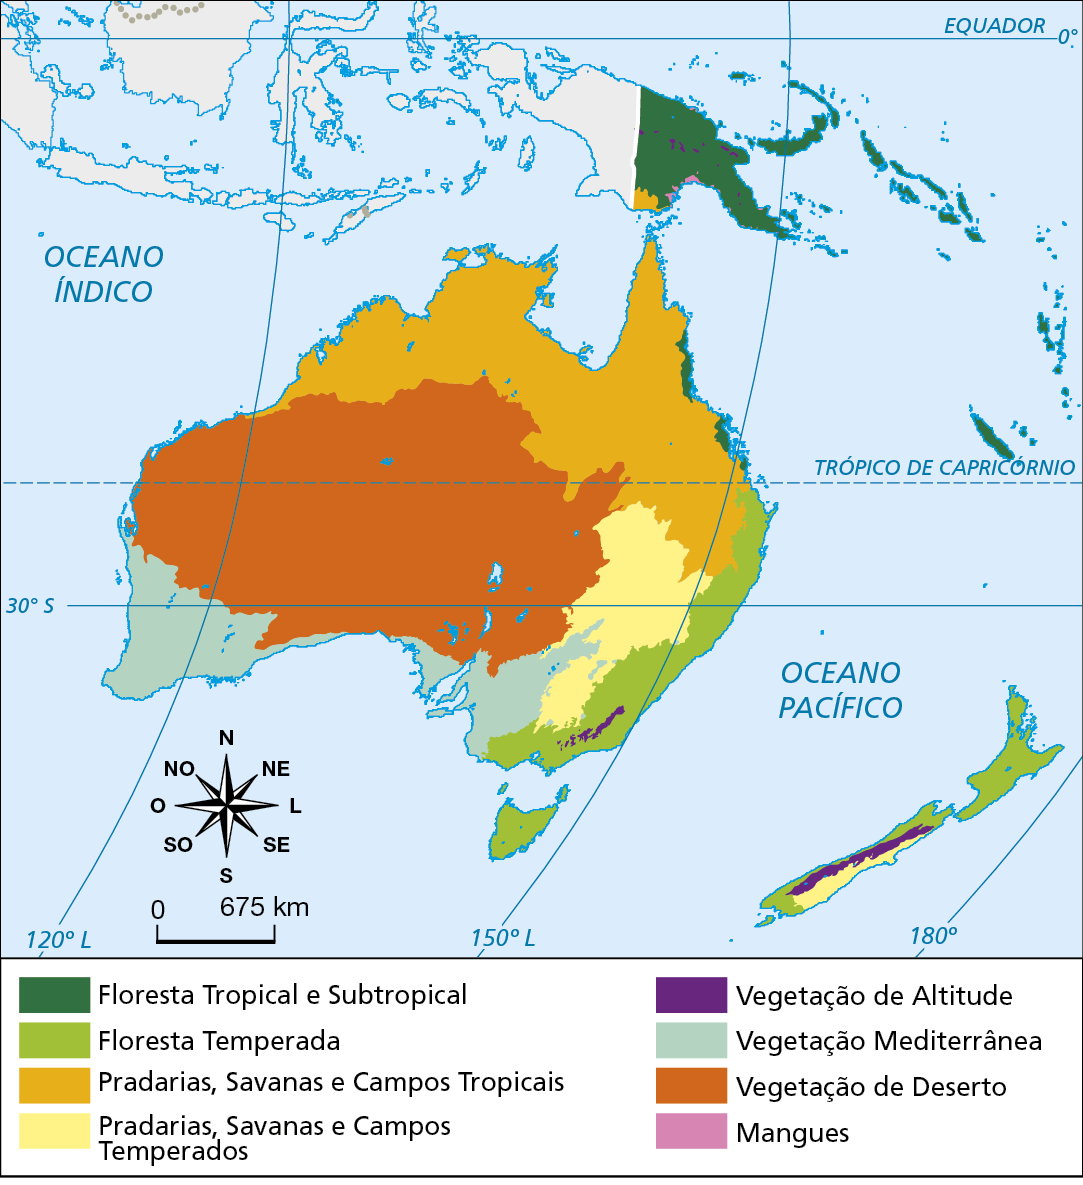 Mapa. Oceania: vegetação. Mapa mostrando os tipos de vegetação da Oceania. Floresta Tropical e Subtropical: fragmento na porção nordeste da Austrália e predominante na Papua Nova Guiné e nas demais ilhas da Oceania. Floresta Temperada: costa leste da Austrália e predominante no norte e na costa oeste da Nova Zelândia. Pradarias, Savanas e Campos Tropicais: porção norte da Austrália. Pradarias, Savanas e Campos Temperados: interior da Austrália e costa leste da Nova Zelândia. Vegetação de Altitude: fragmento da costa sudeste da Austrália e interior da Nova Zelândia e da Papua Nova Guiné. Vegetação de Deserto: interior da Austrália. Na parte inferior esquerda, rosa dos ventos e escala de 0 a 675 quilômetros.